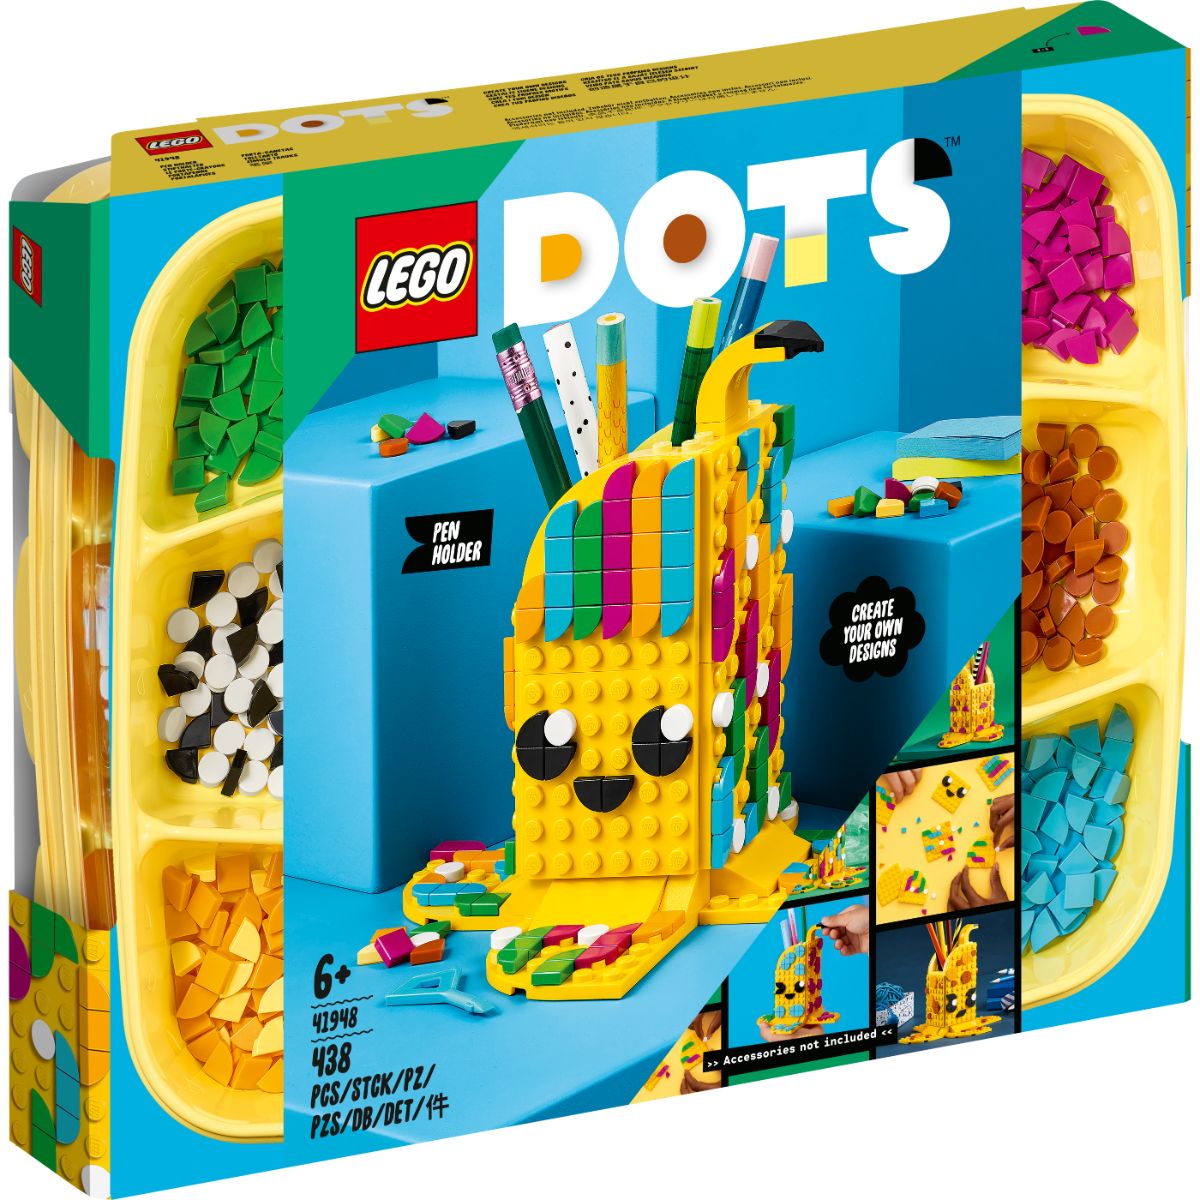 LEGO® Dots – Suport Pentru Pixuri (41948) (41948)